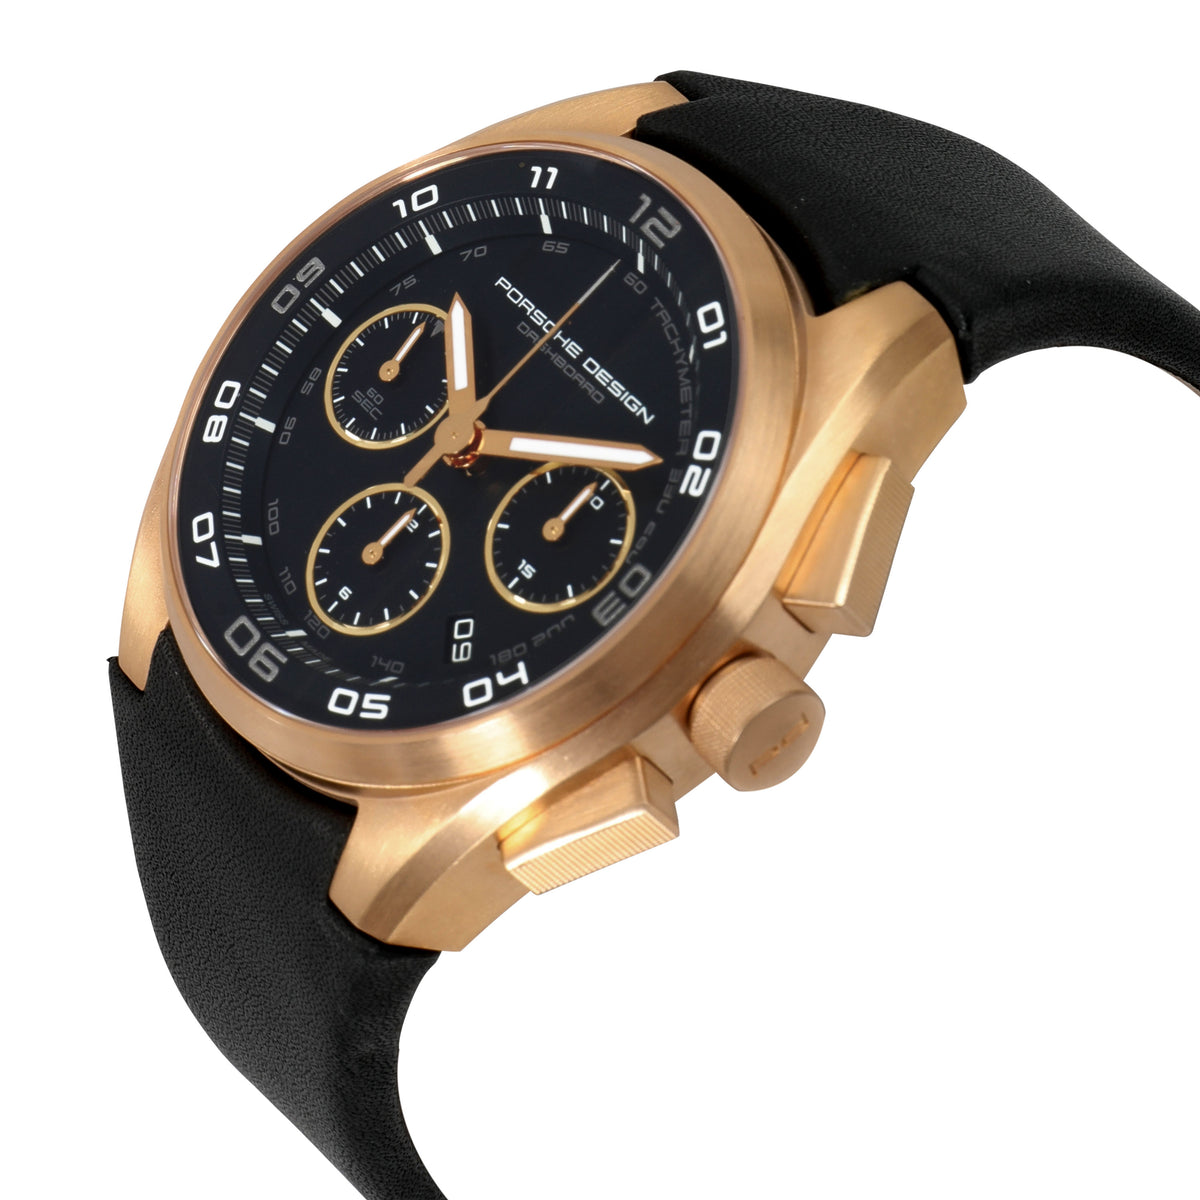 Porsche Design Dashboard 6620-69-40-1243 Men's Watch in 18kt Rose Gold